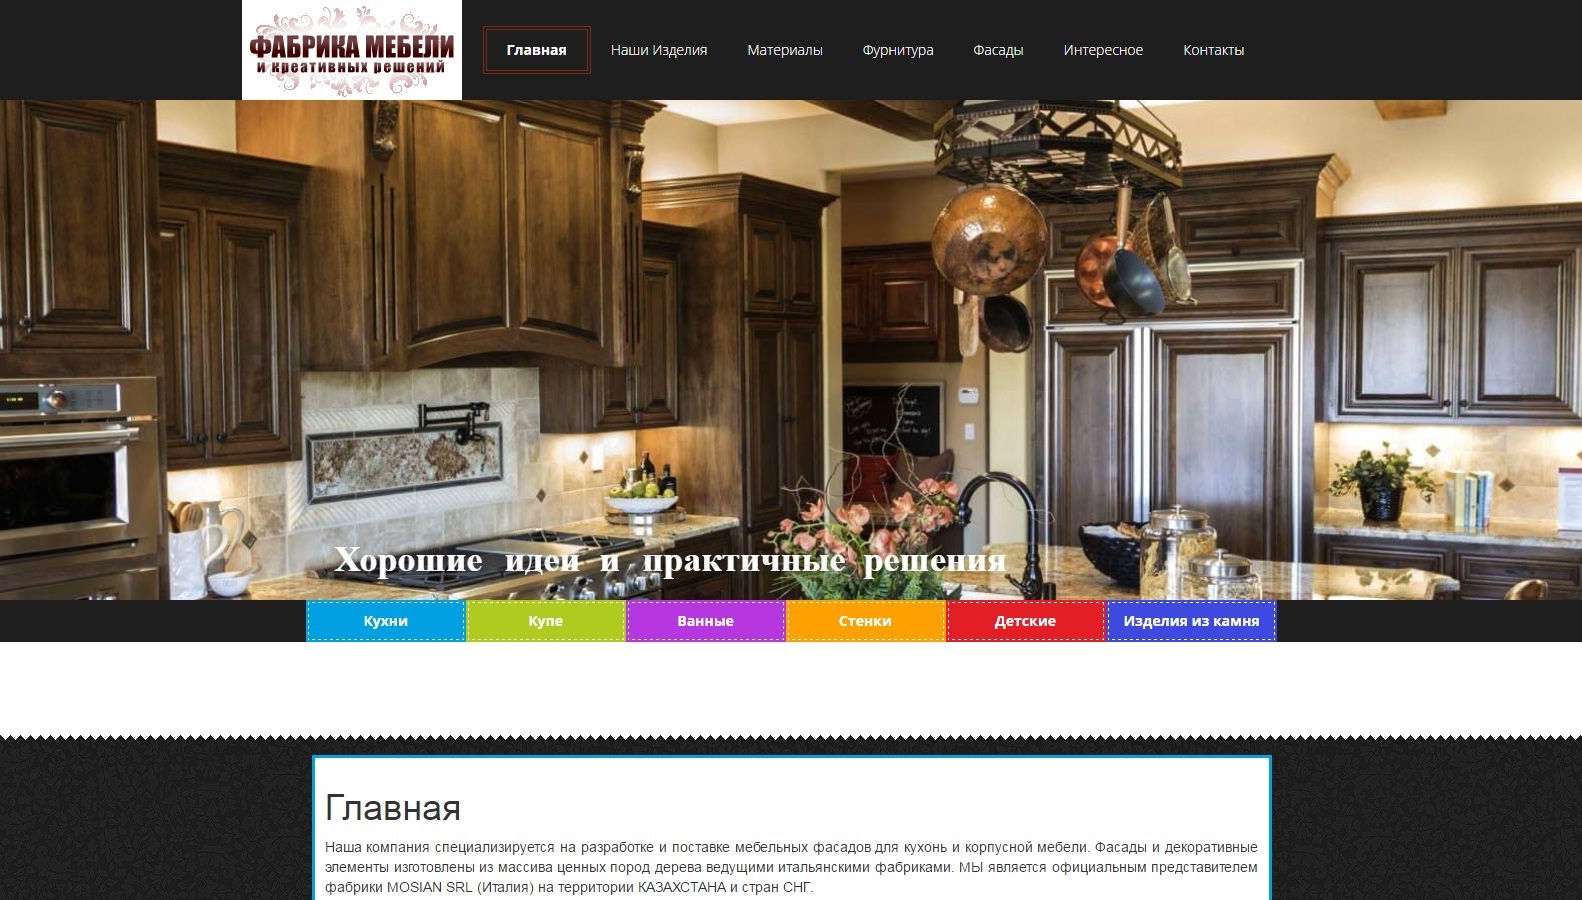 Создание сайта компании Фабрика мебели и креативных решений fabrika-mebeli.kz - 